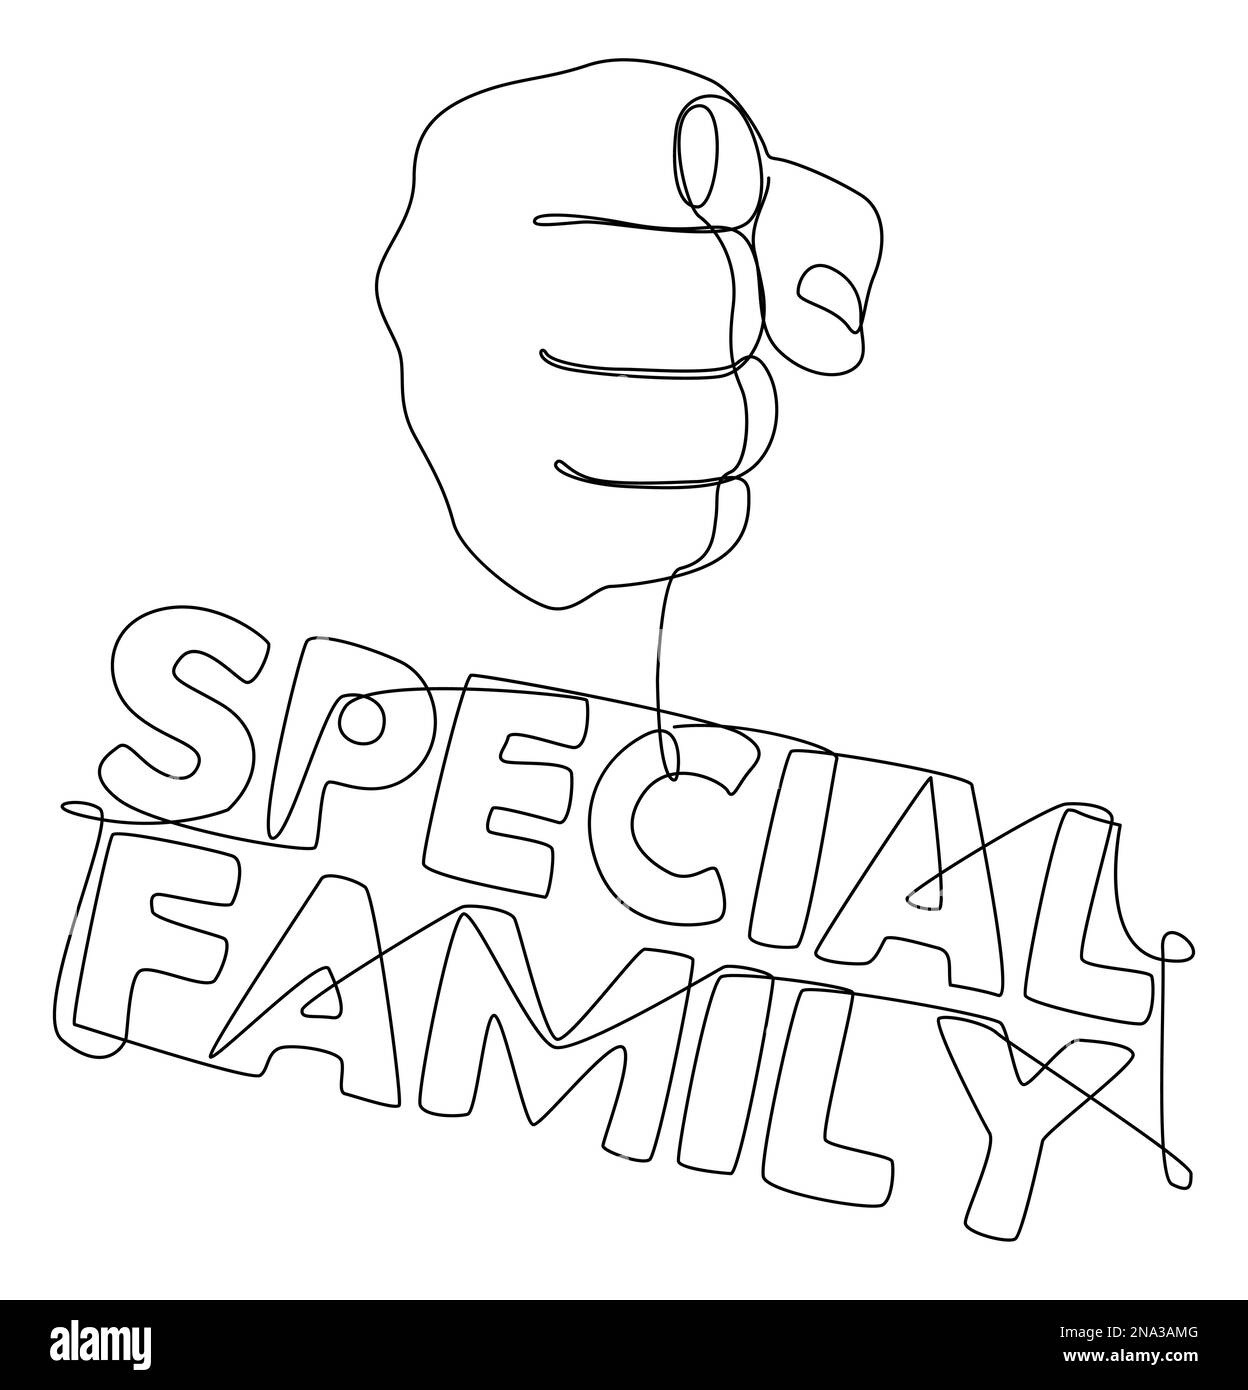 Eine durchgehende Handbewegung mit dem Wort "Special Family". Vektorkonzept zur Darstellung dünner Linien. Kontur Zeichnen kreativer Ideen. Stock Vektor